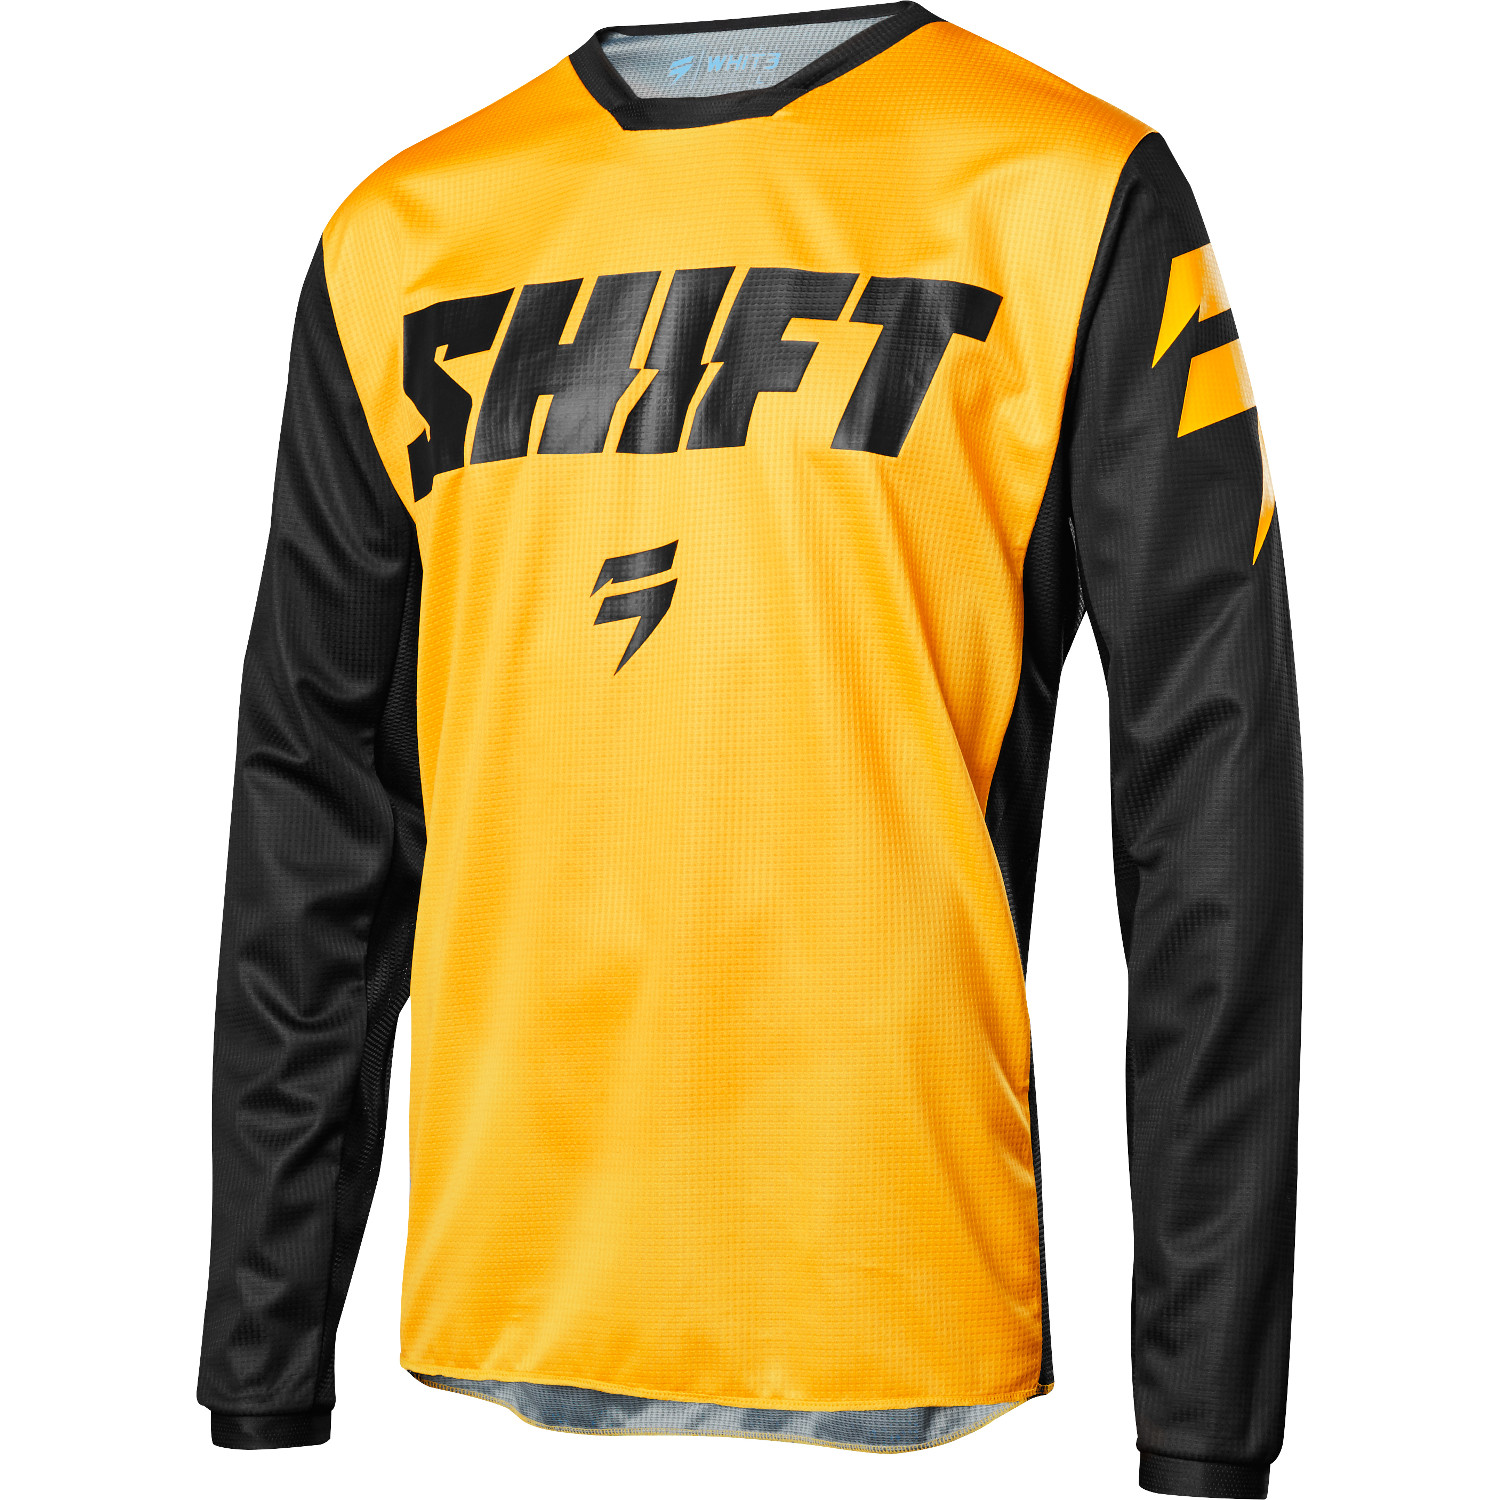 Shift Kids Jersey Whit3 Ninety Seven - Yellow